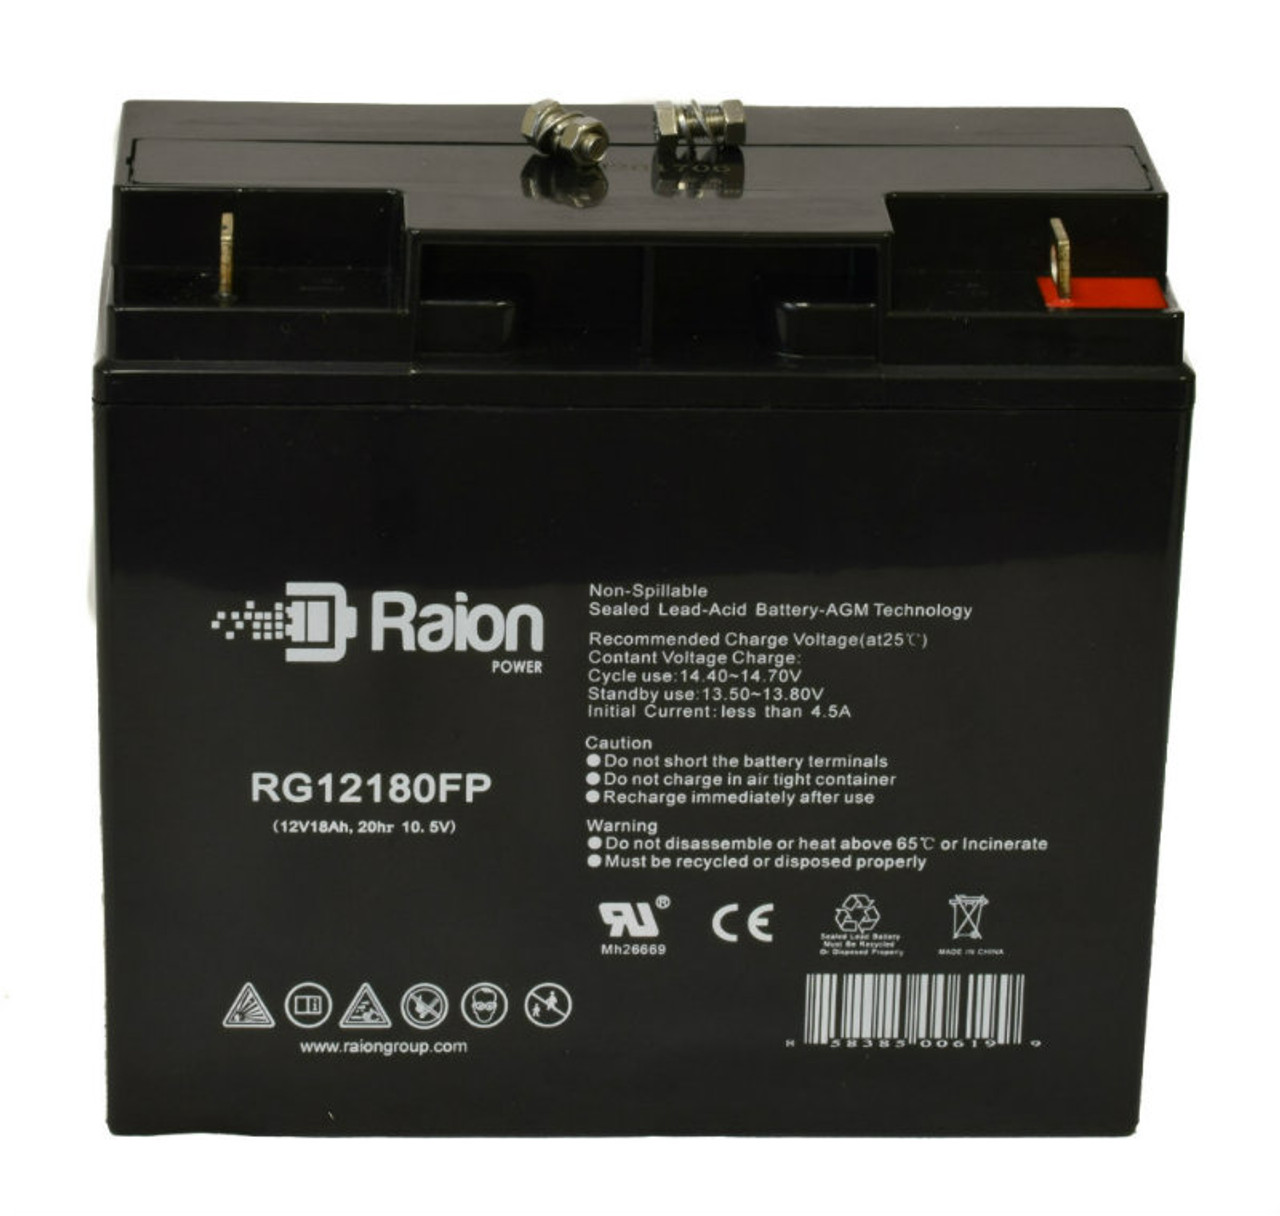 Raion Power RG12180FP 12V 18Ah Lead Acid Battery for NPP Power NP12-15Ah